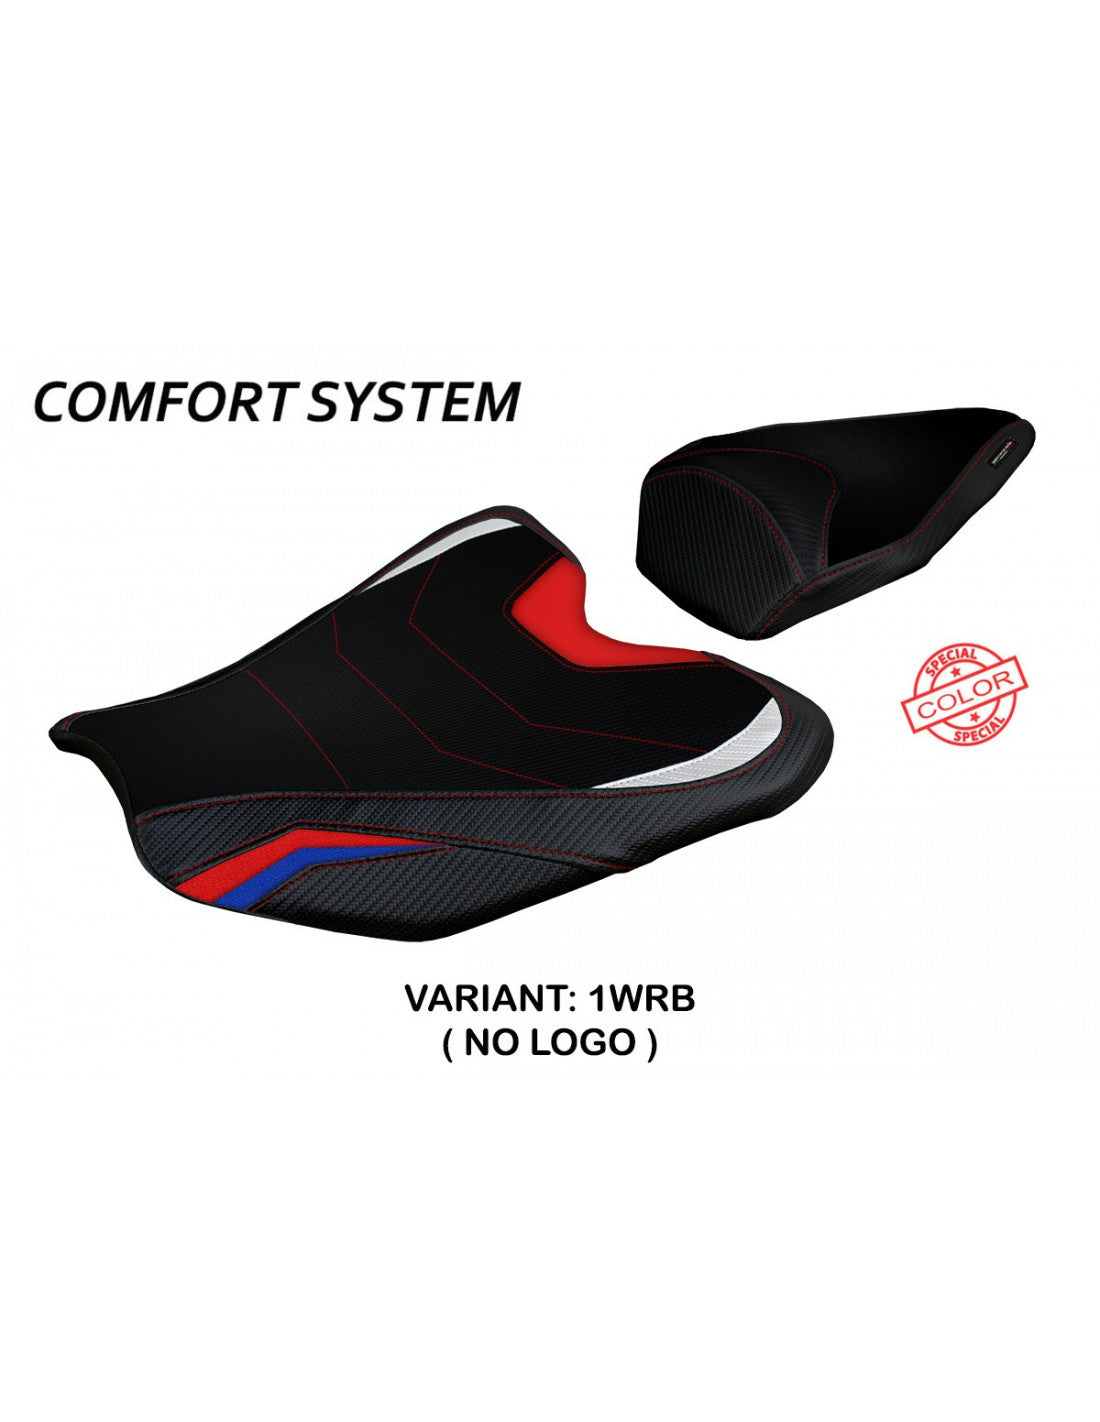 Tappezzeria Pedara Special Color Comfort System Seat Cover for Honda CBR 1000RR